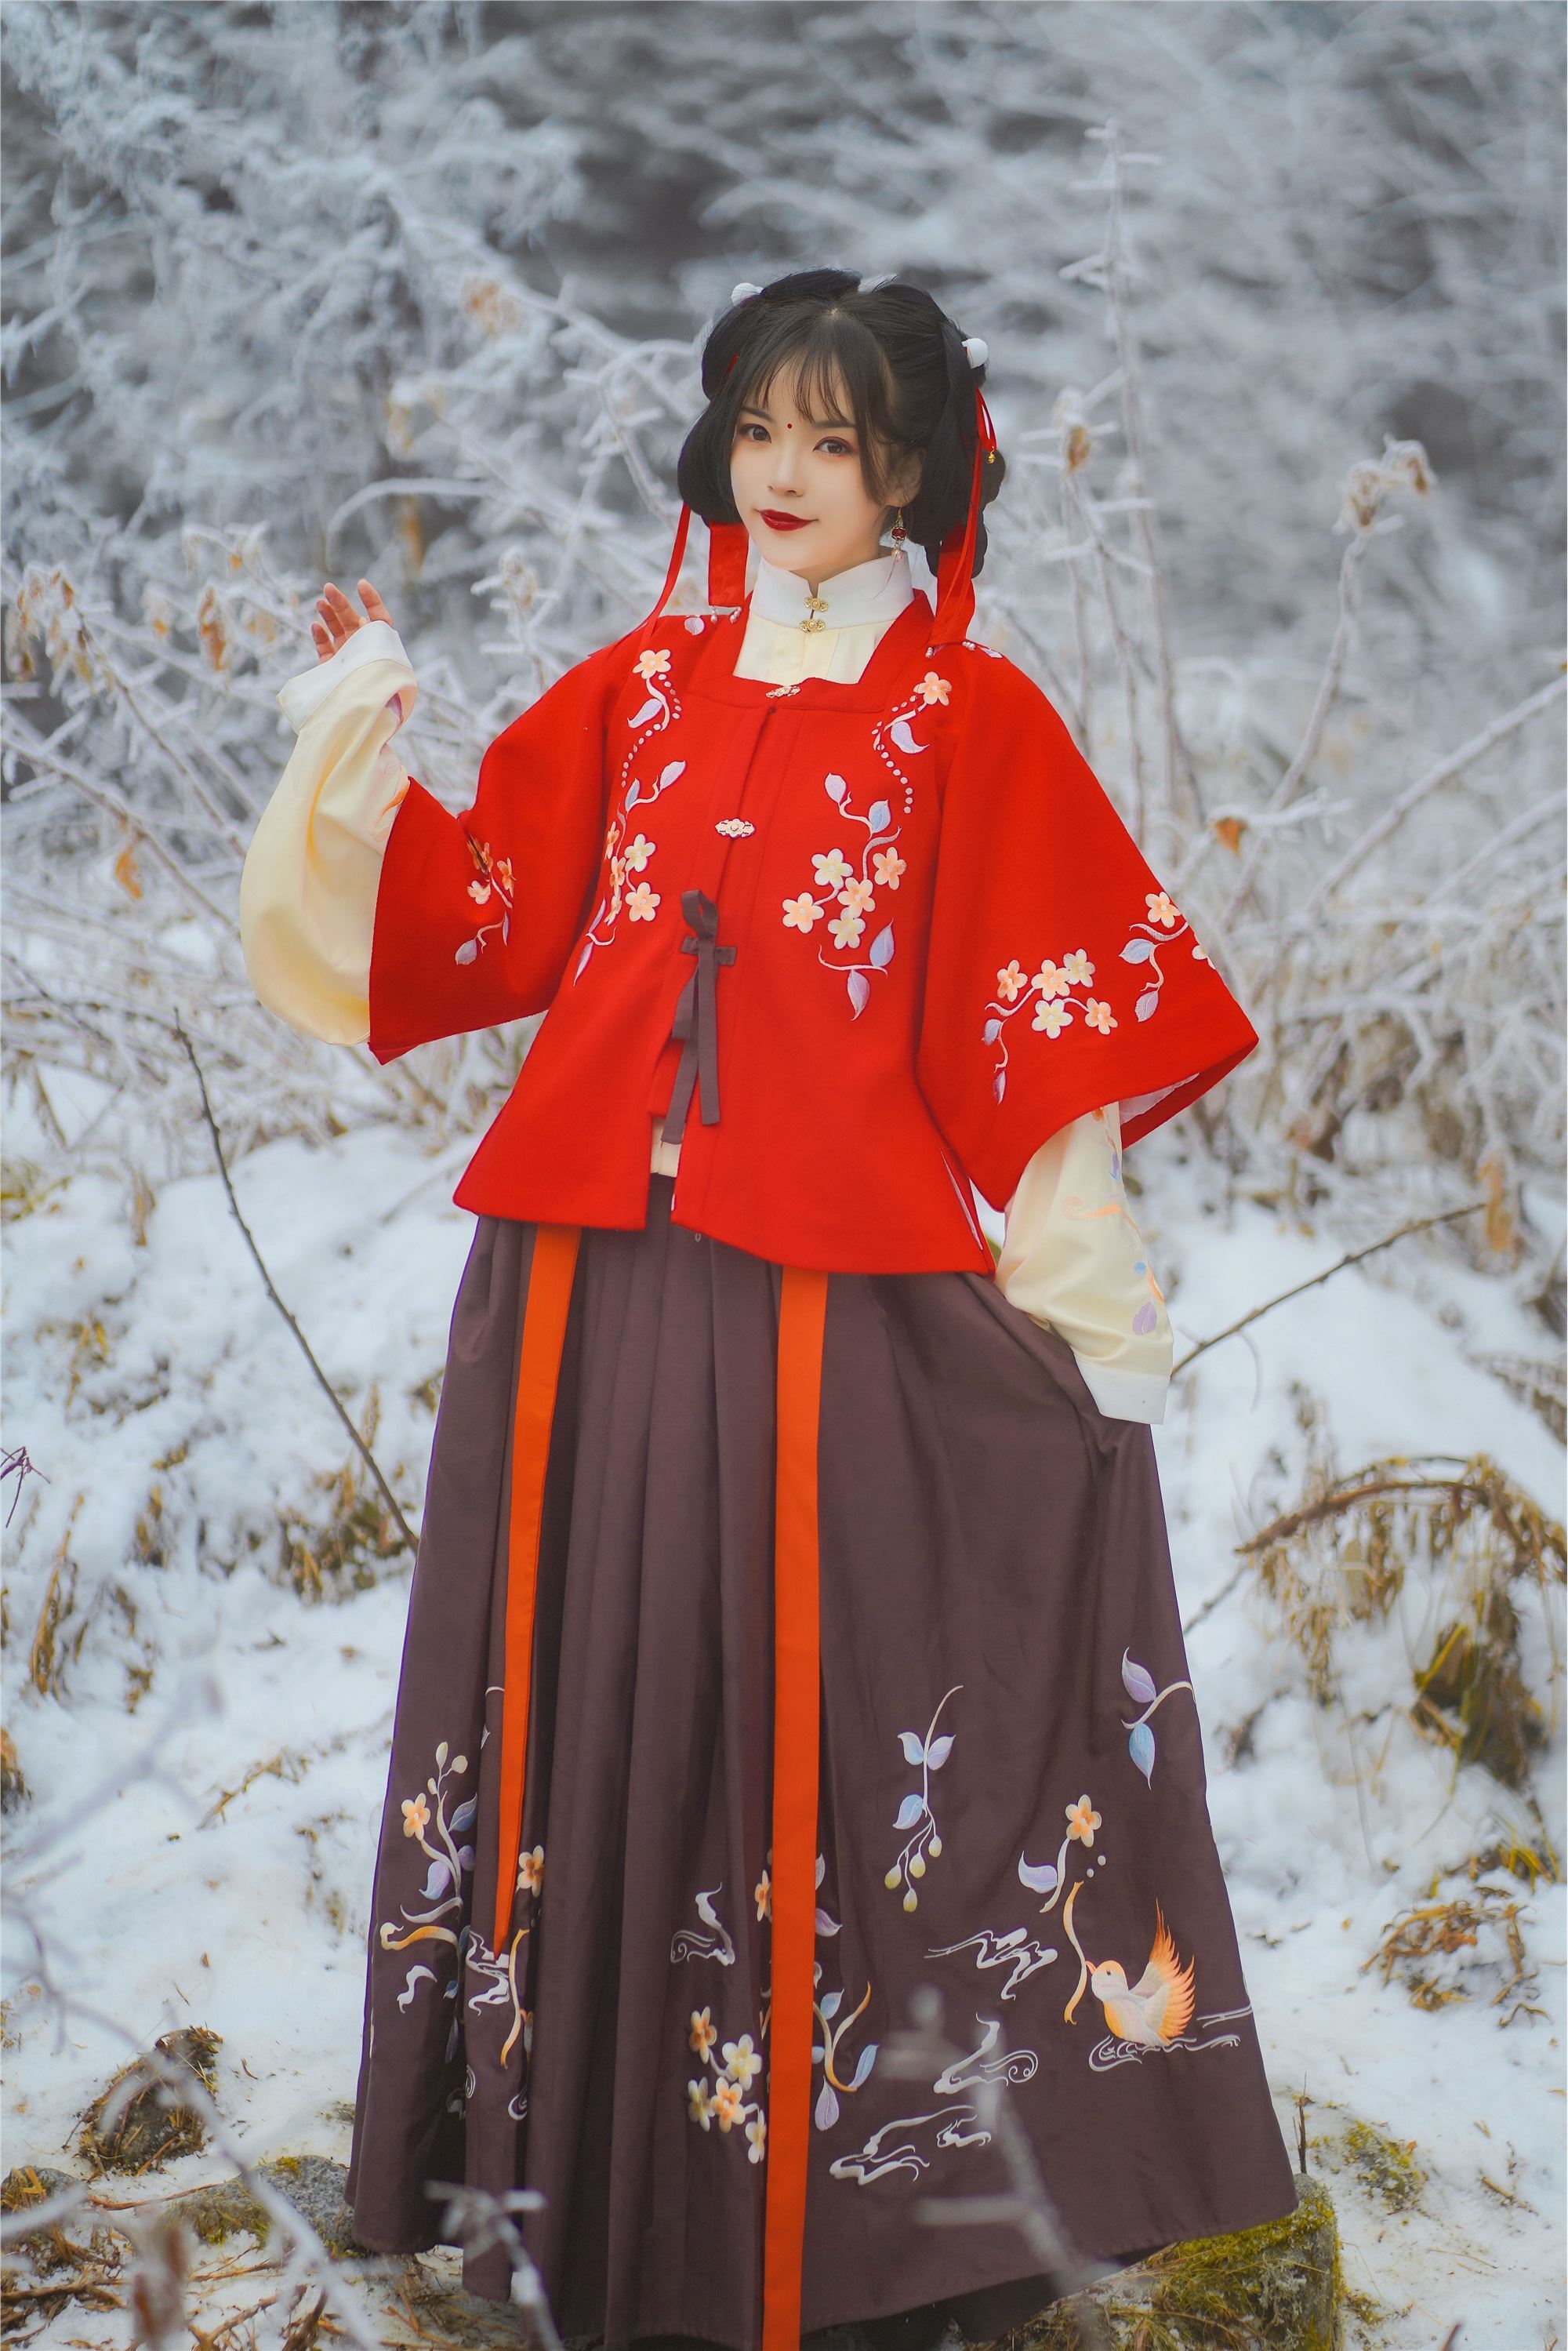 YITUYU Art Picture Language 2021.09.04 Snow Girl Zhao Ruijie ez